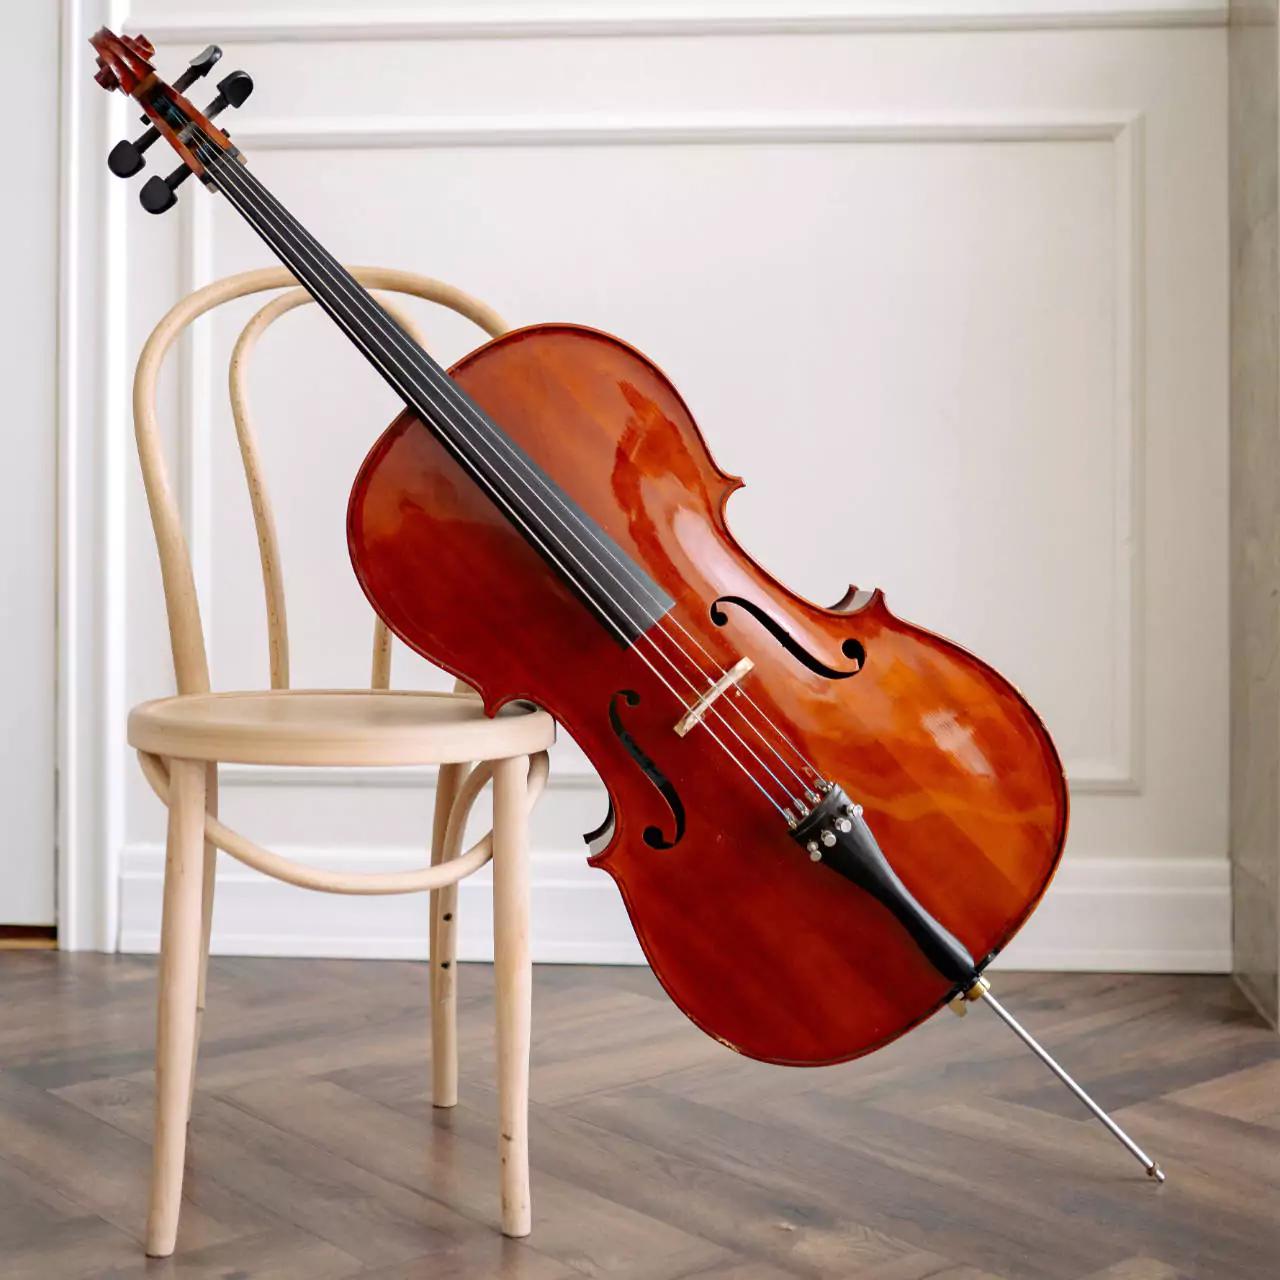 violin and cello - Is violin and cello the same